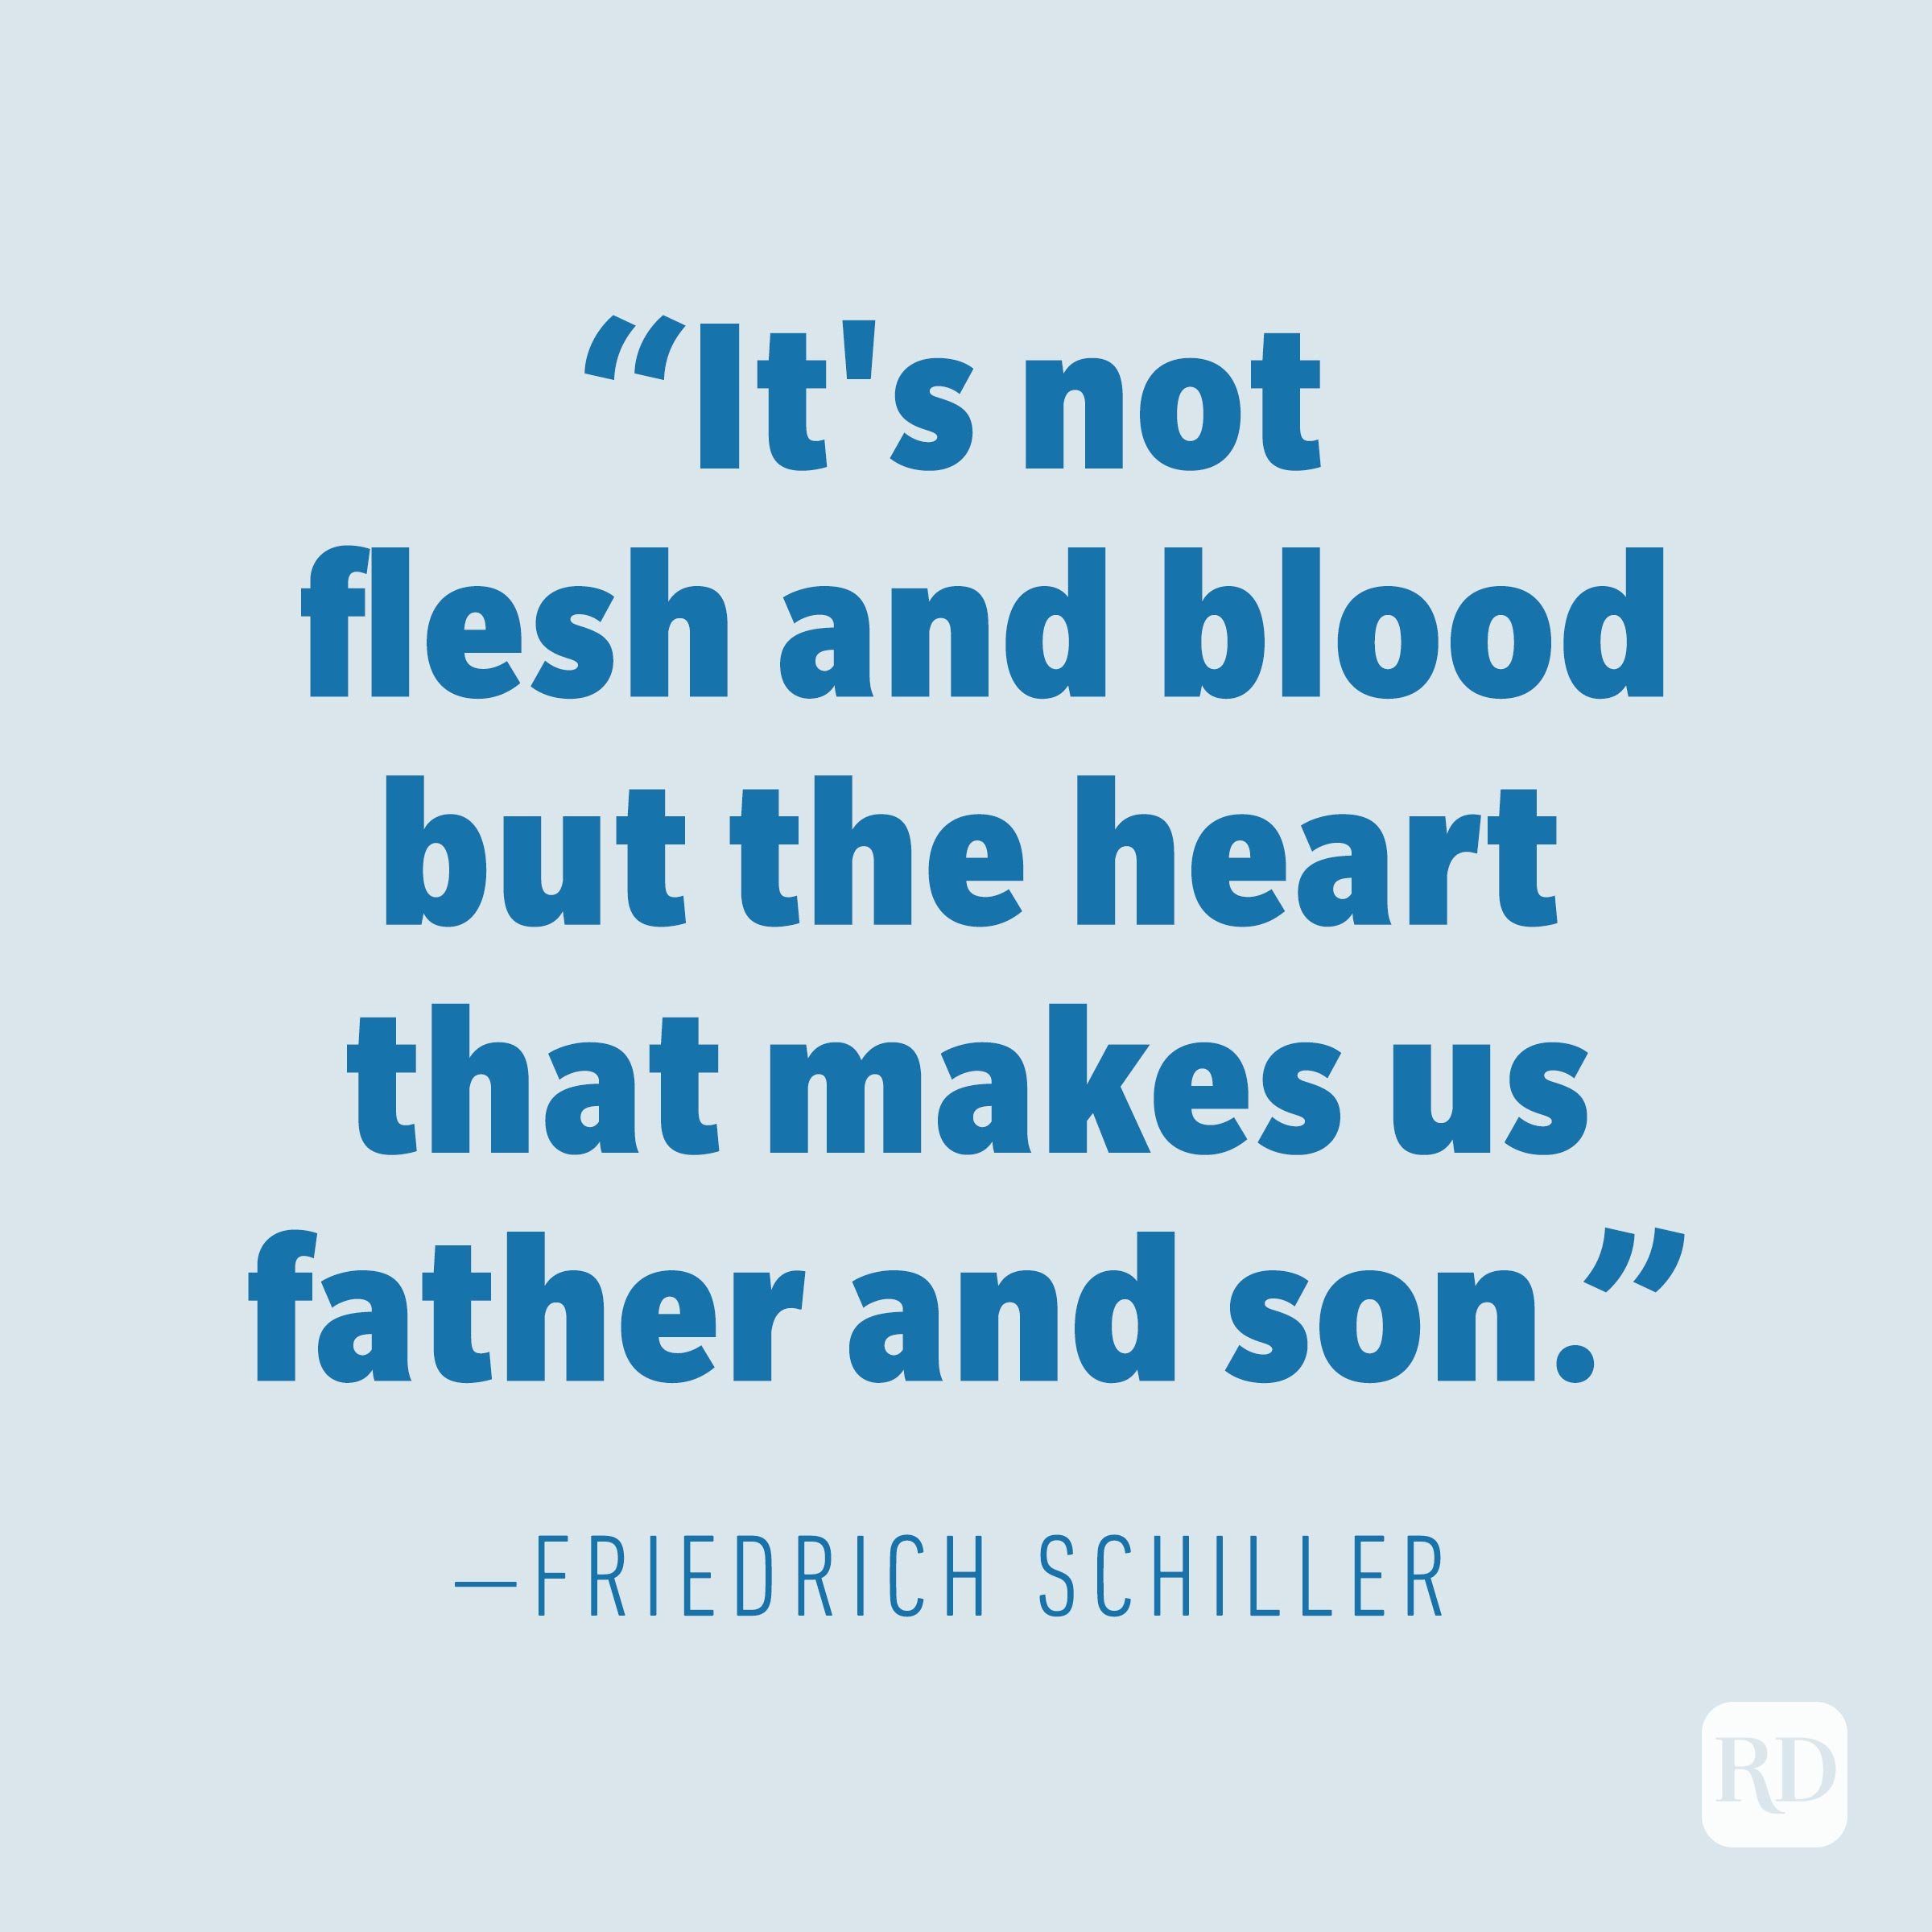 Friedrich Schiller quote